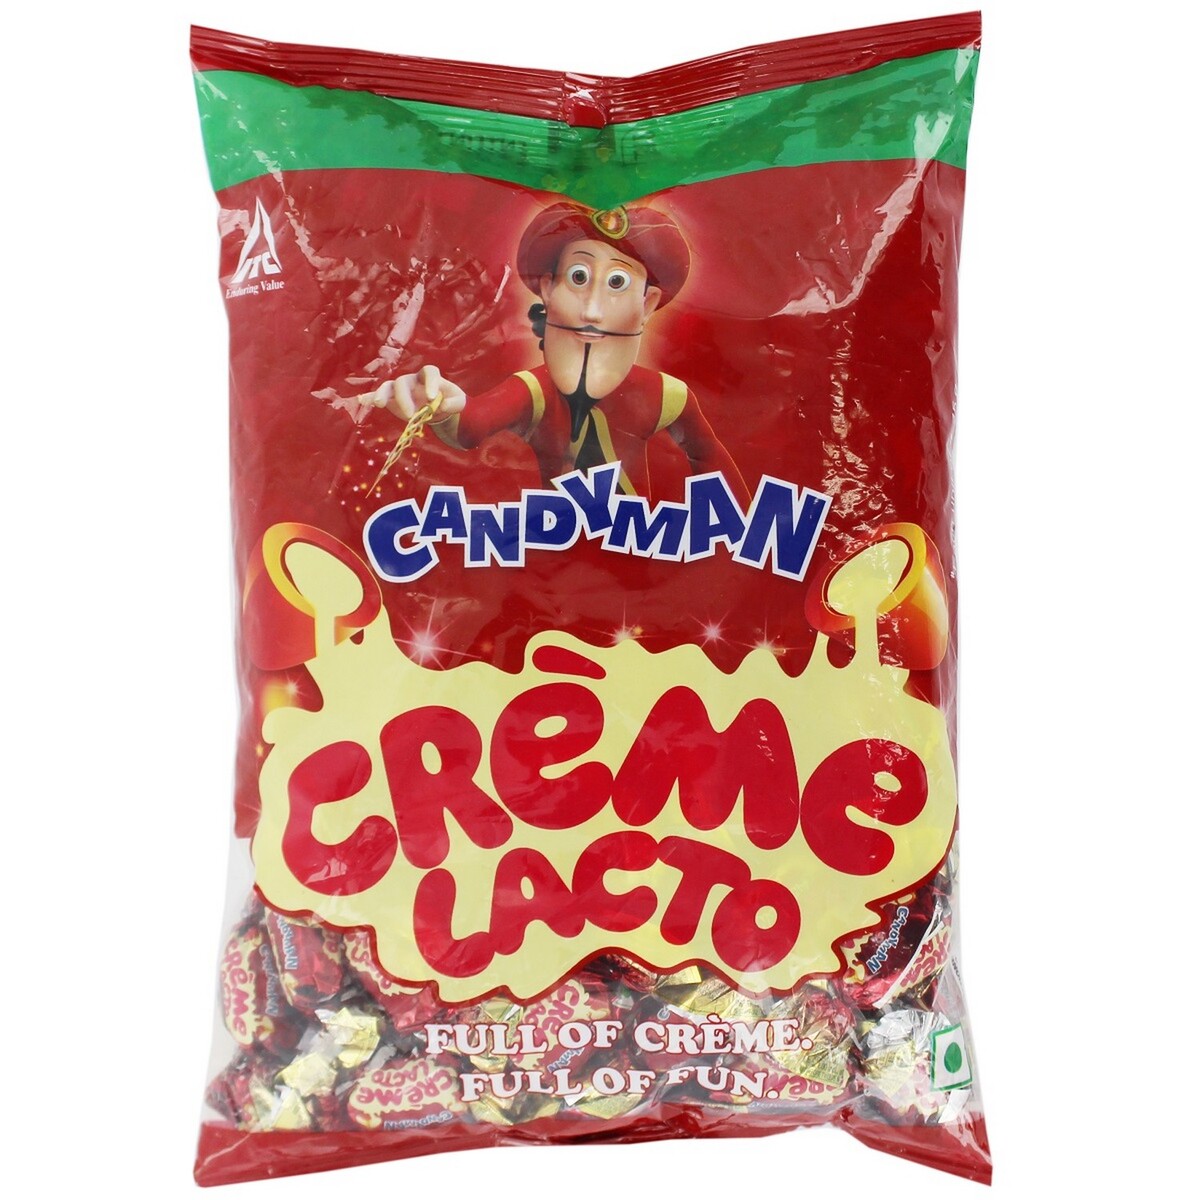 Candyman Creme Lacto 480gm